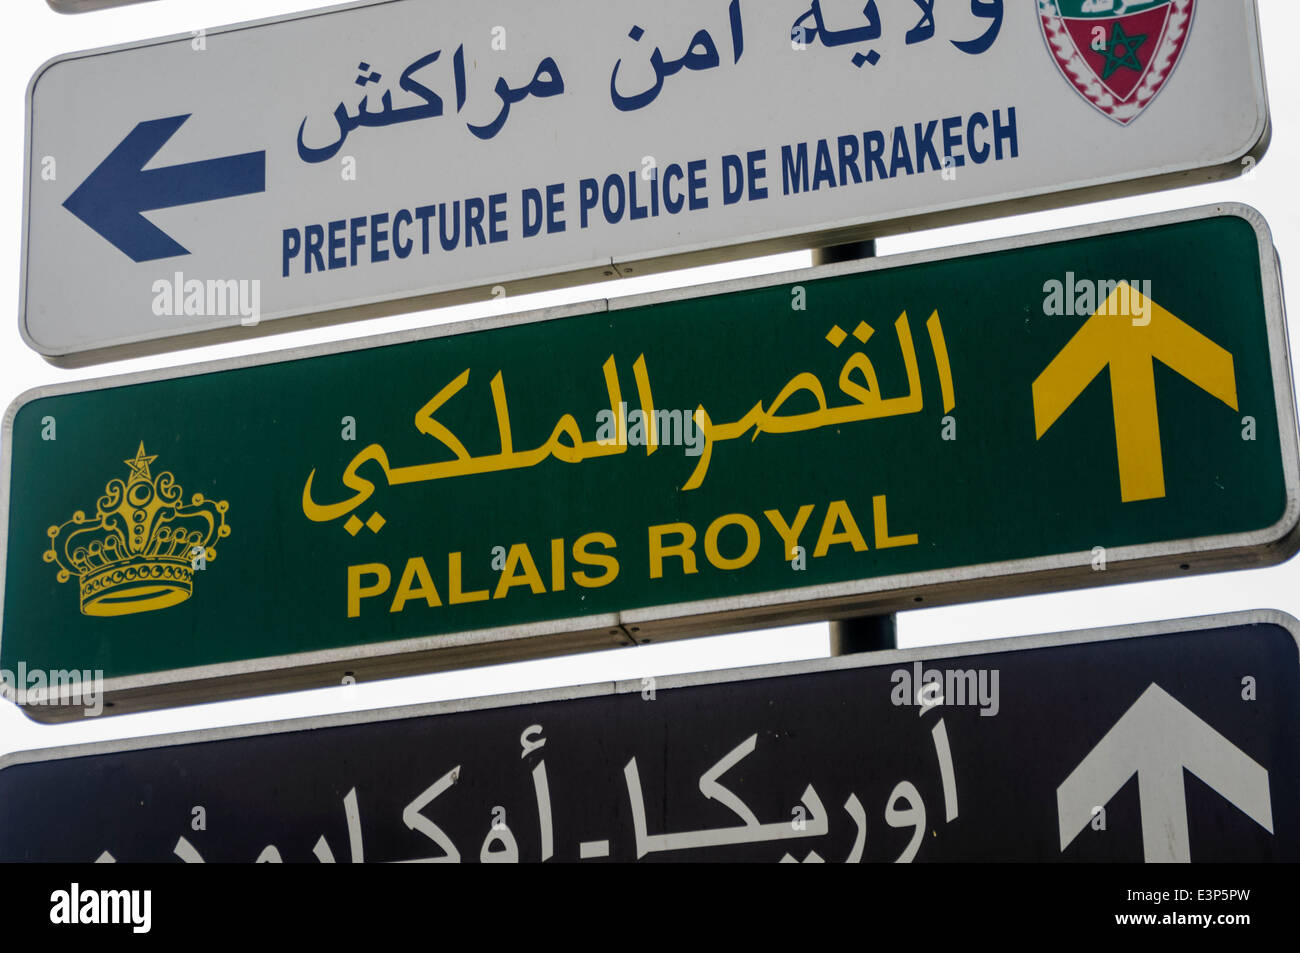 Signs for the Prefecture De Police de Marrakech, police station, and the Palais Royal, Marrakech, Morocco Stock Photo